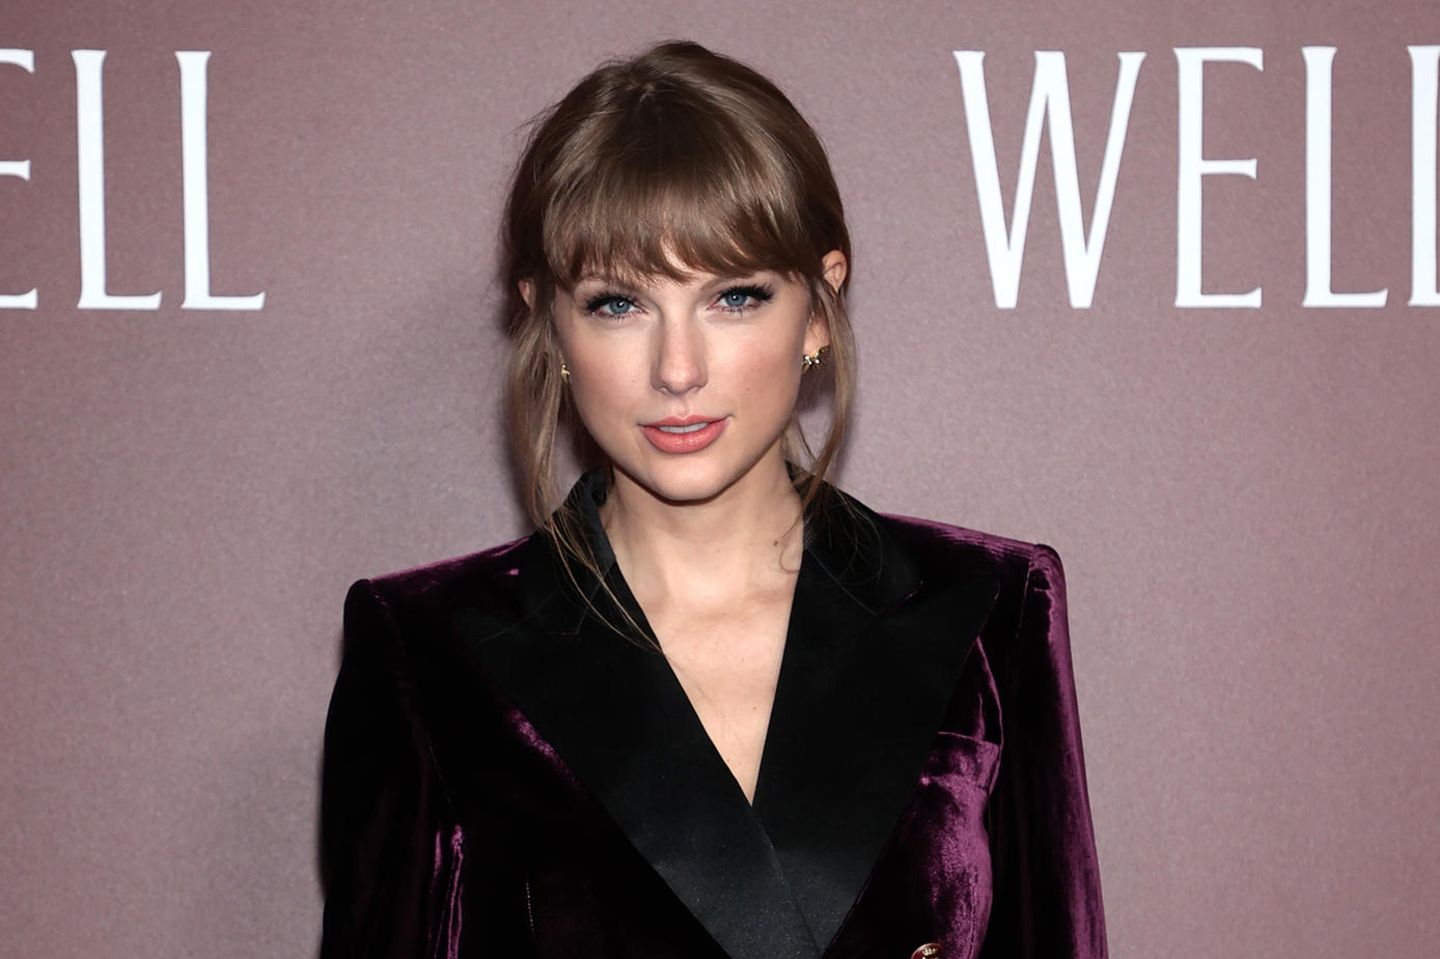 Swiftie: Taylor Swift im roten Samt-Anzug